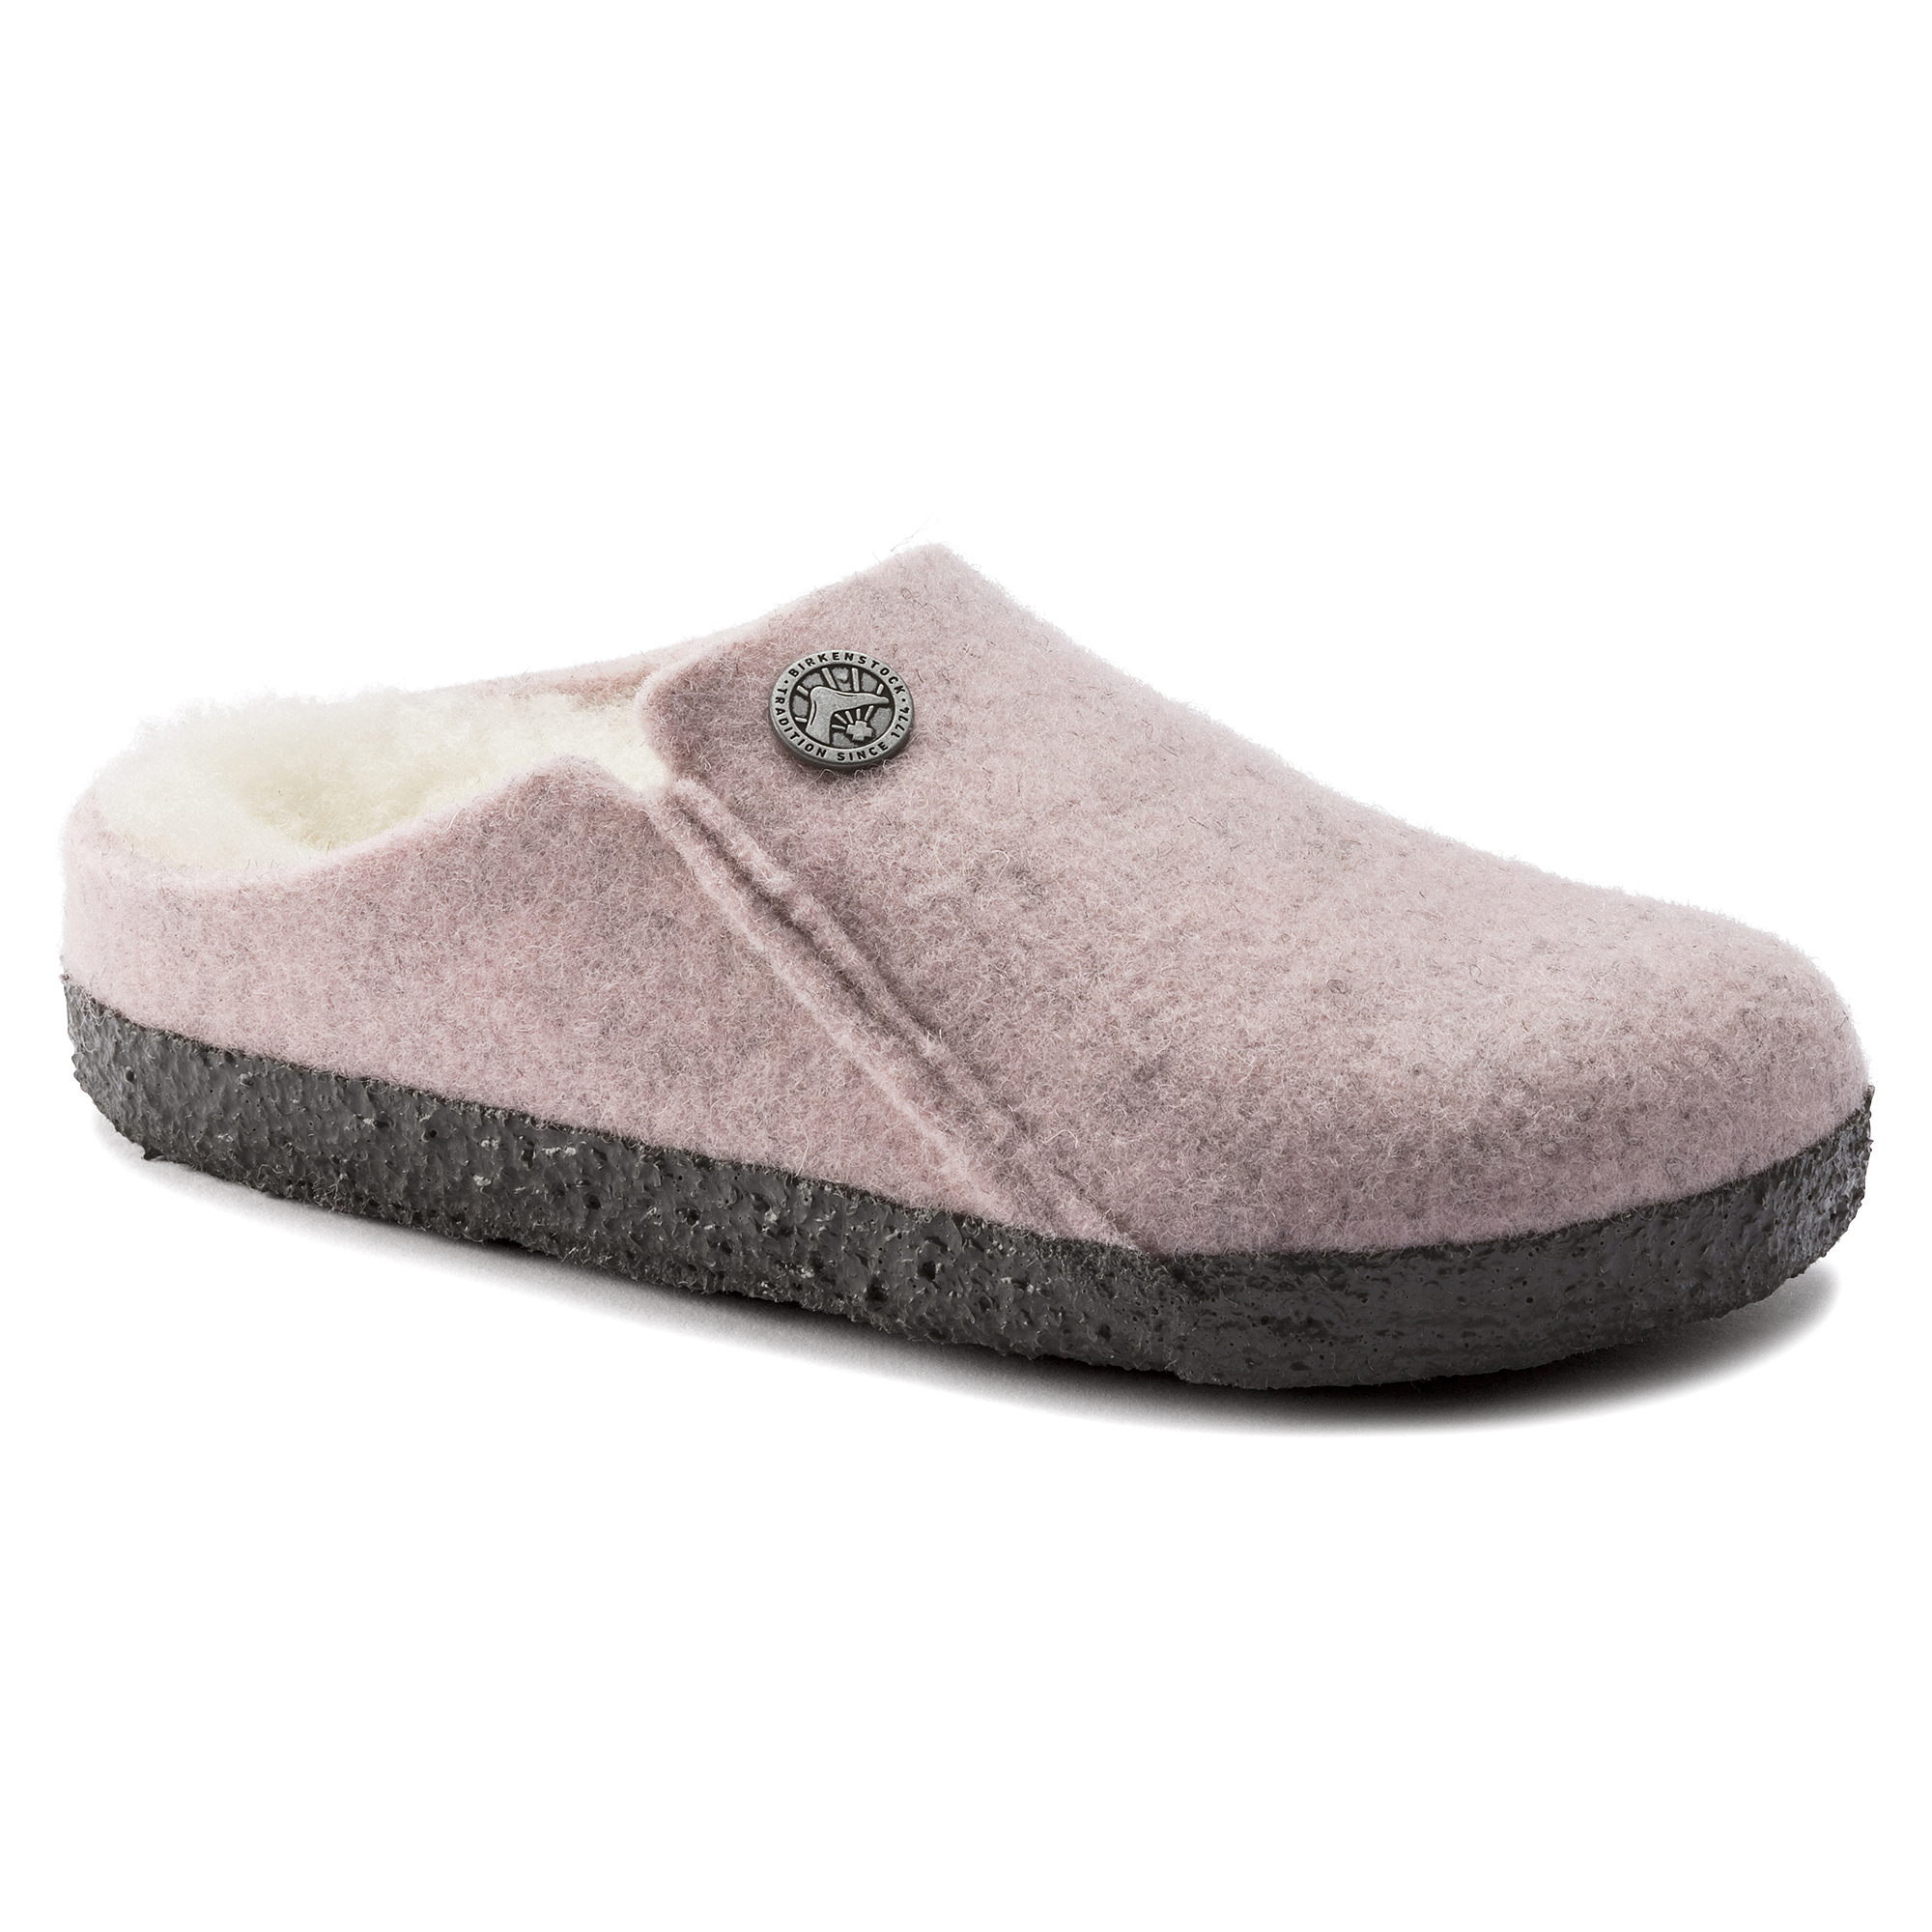 Zermatt Soft | Felt BIRKENSTOCK Kids Shearling Pink Wool